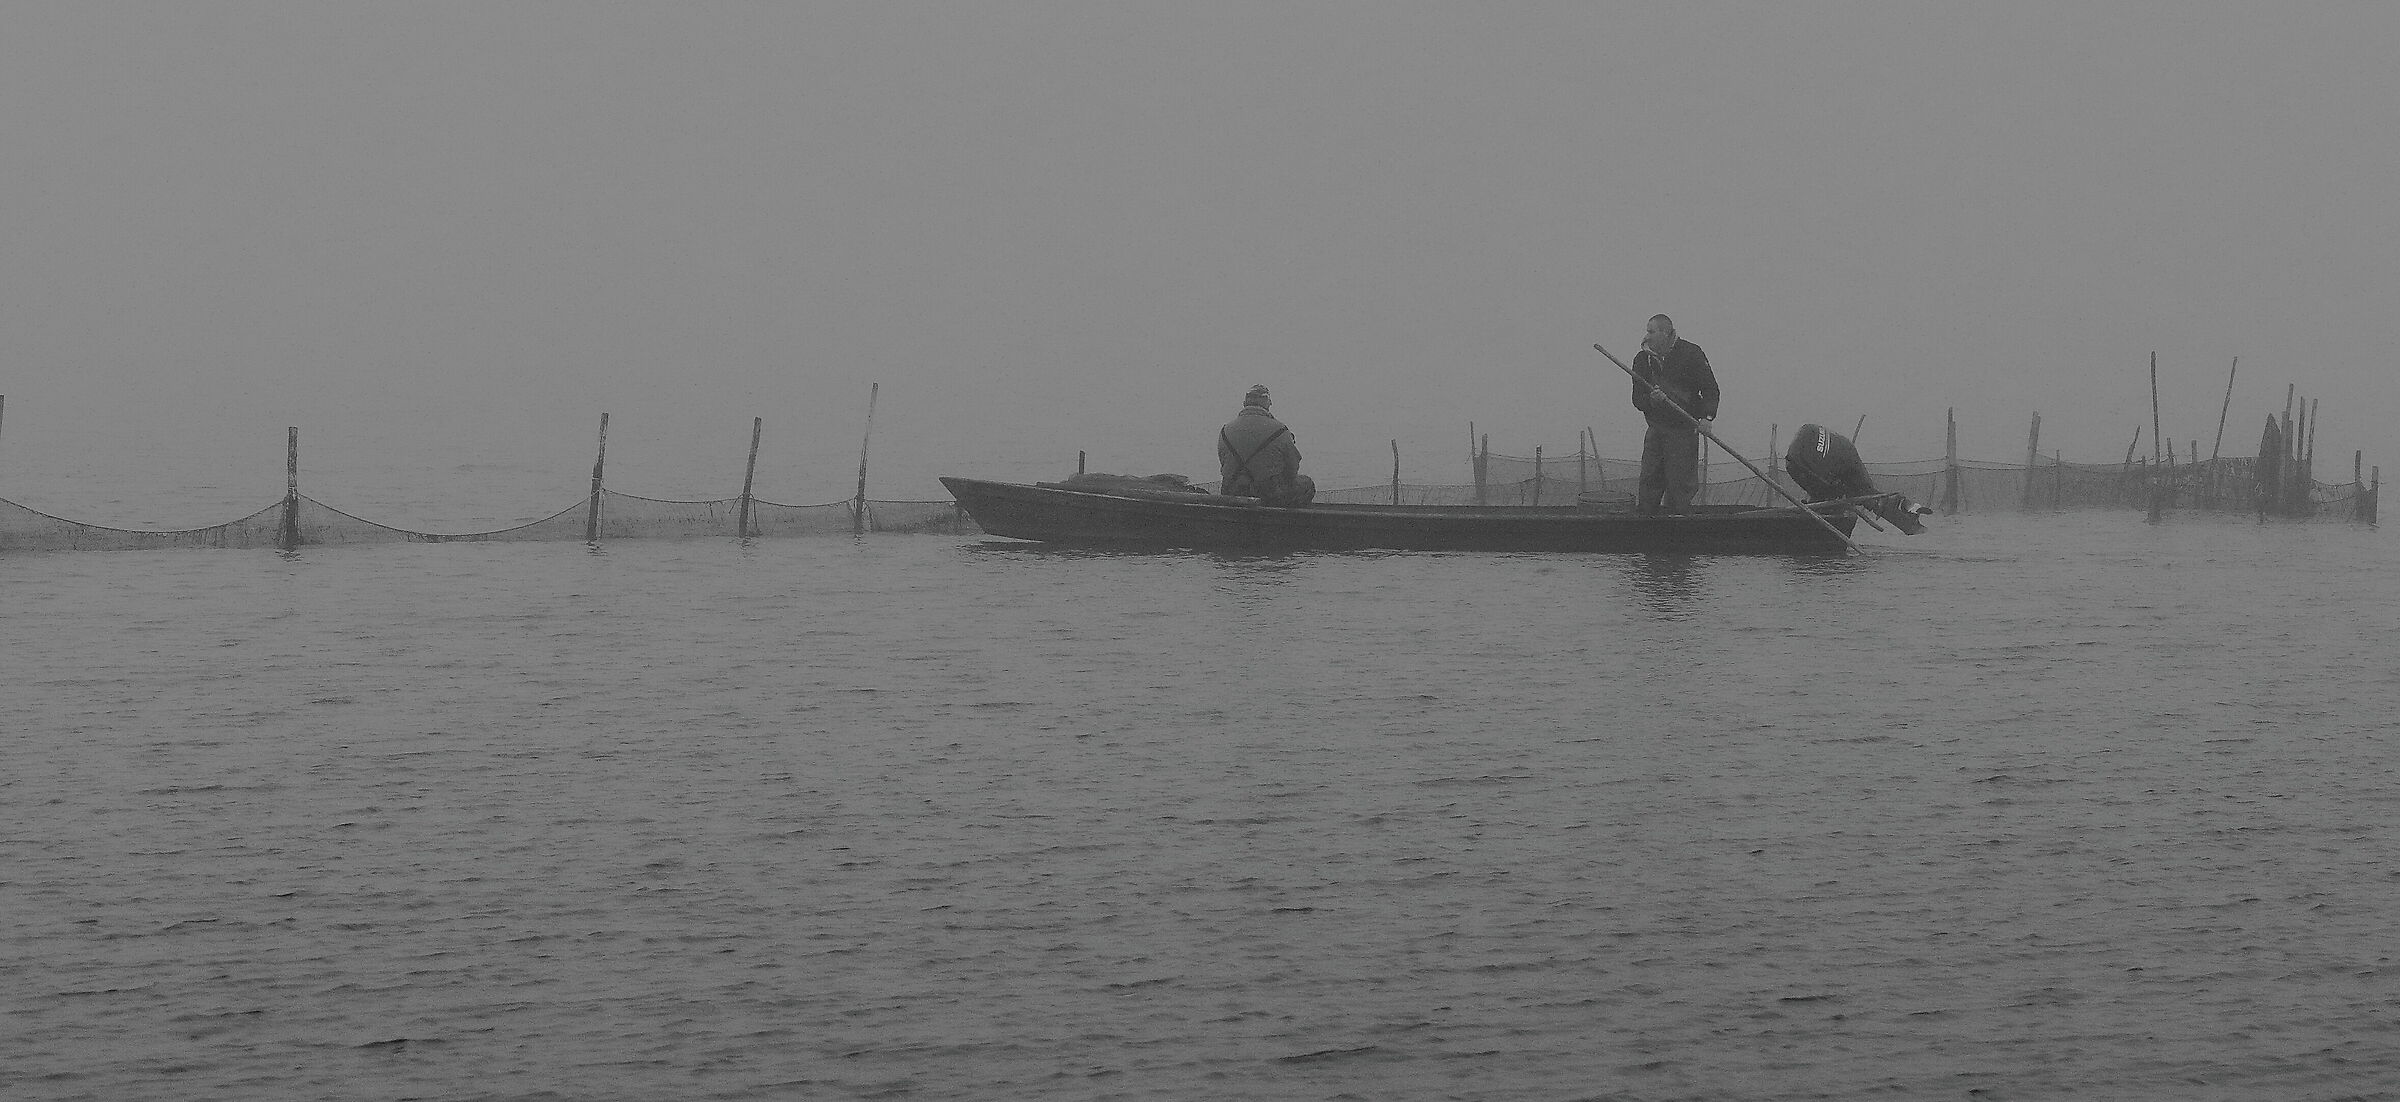 ...acqua, nebbia e duro lavoro, nelle valli del delta.....